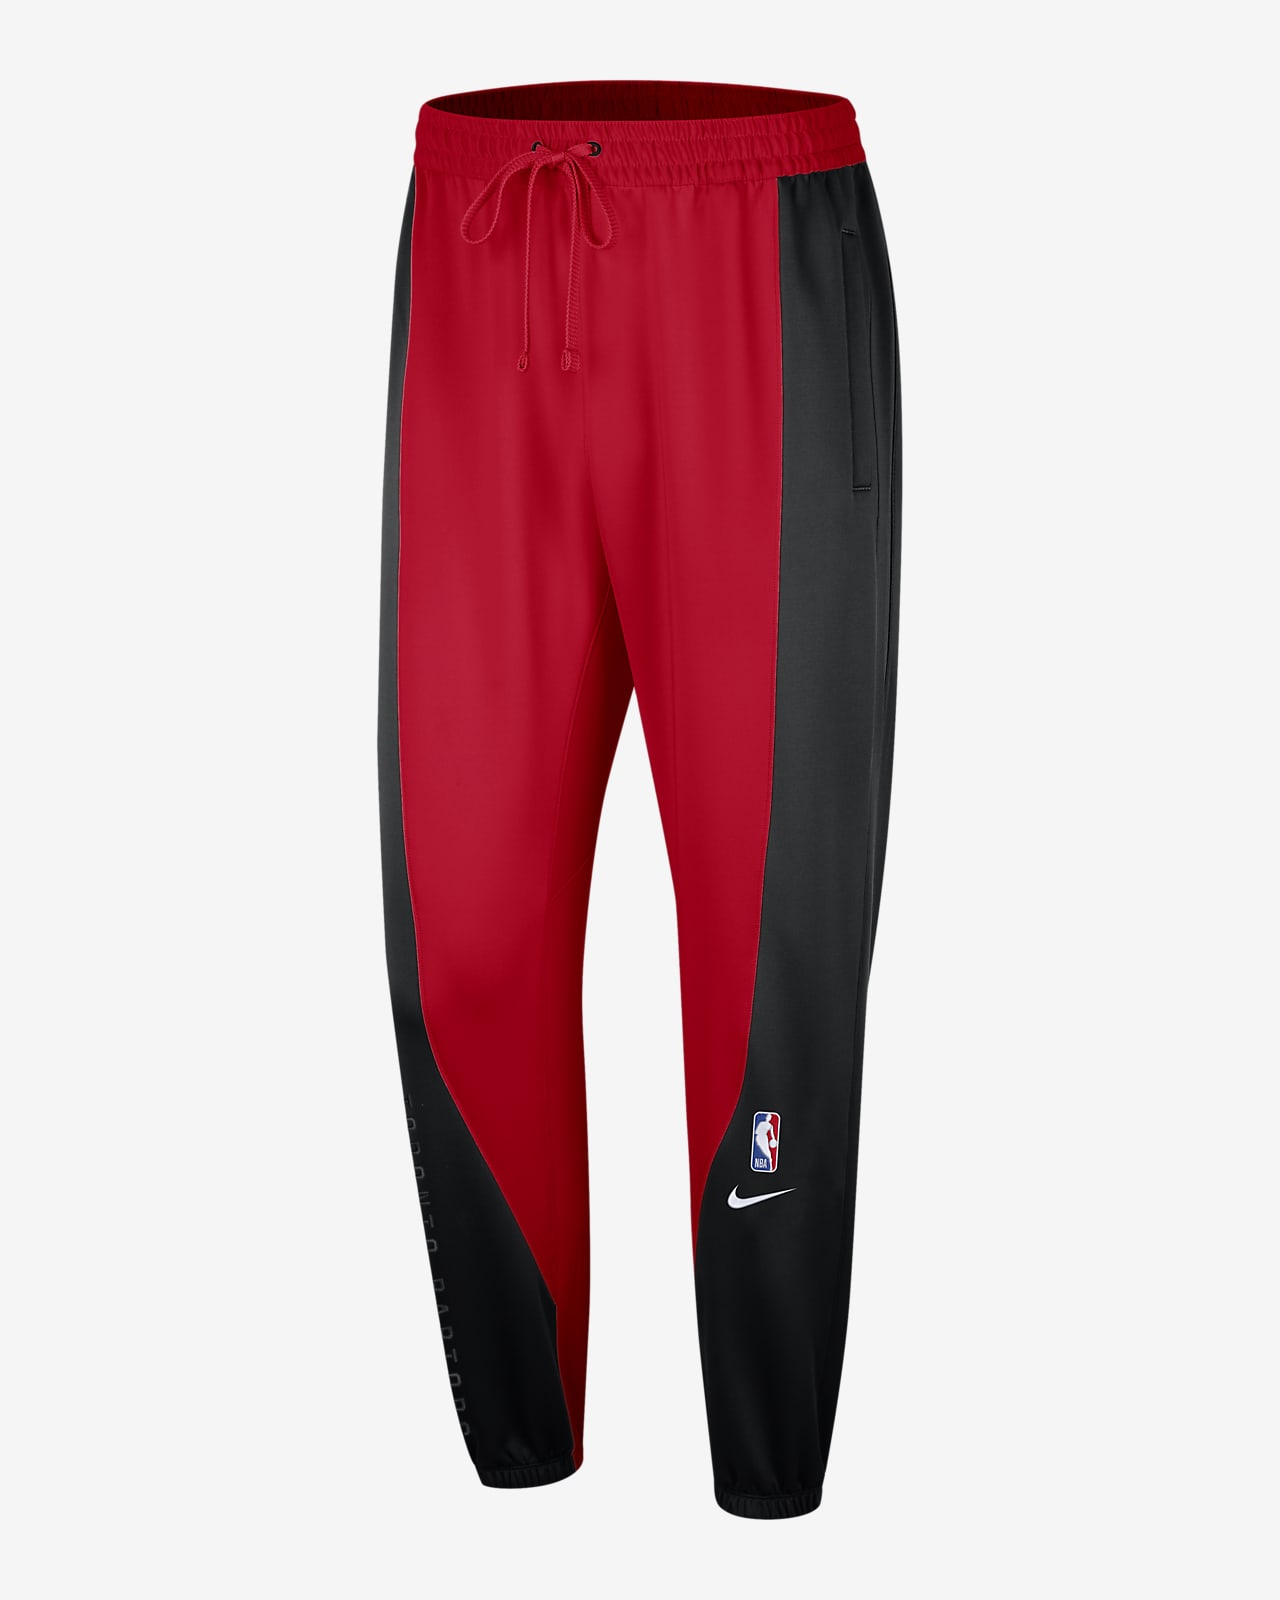 Toronto Raptors Showtime Men's Nike Dri-FIT NBA Trousers